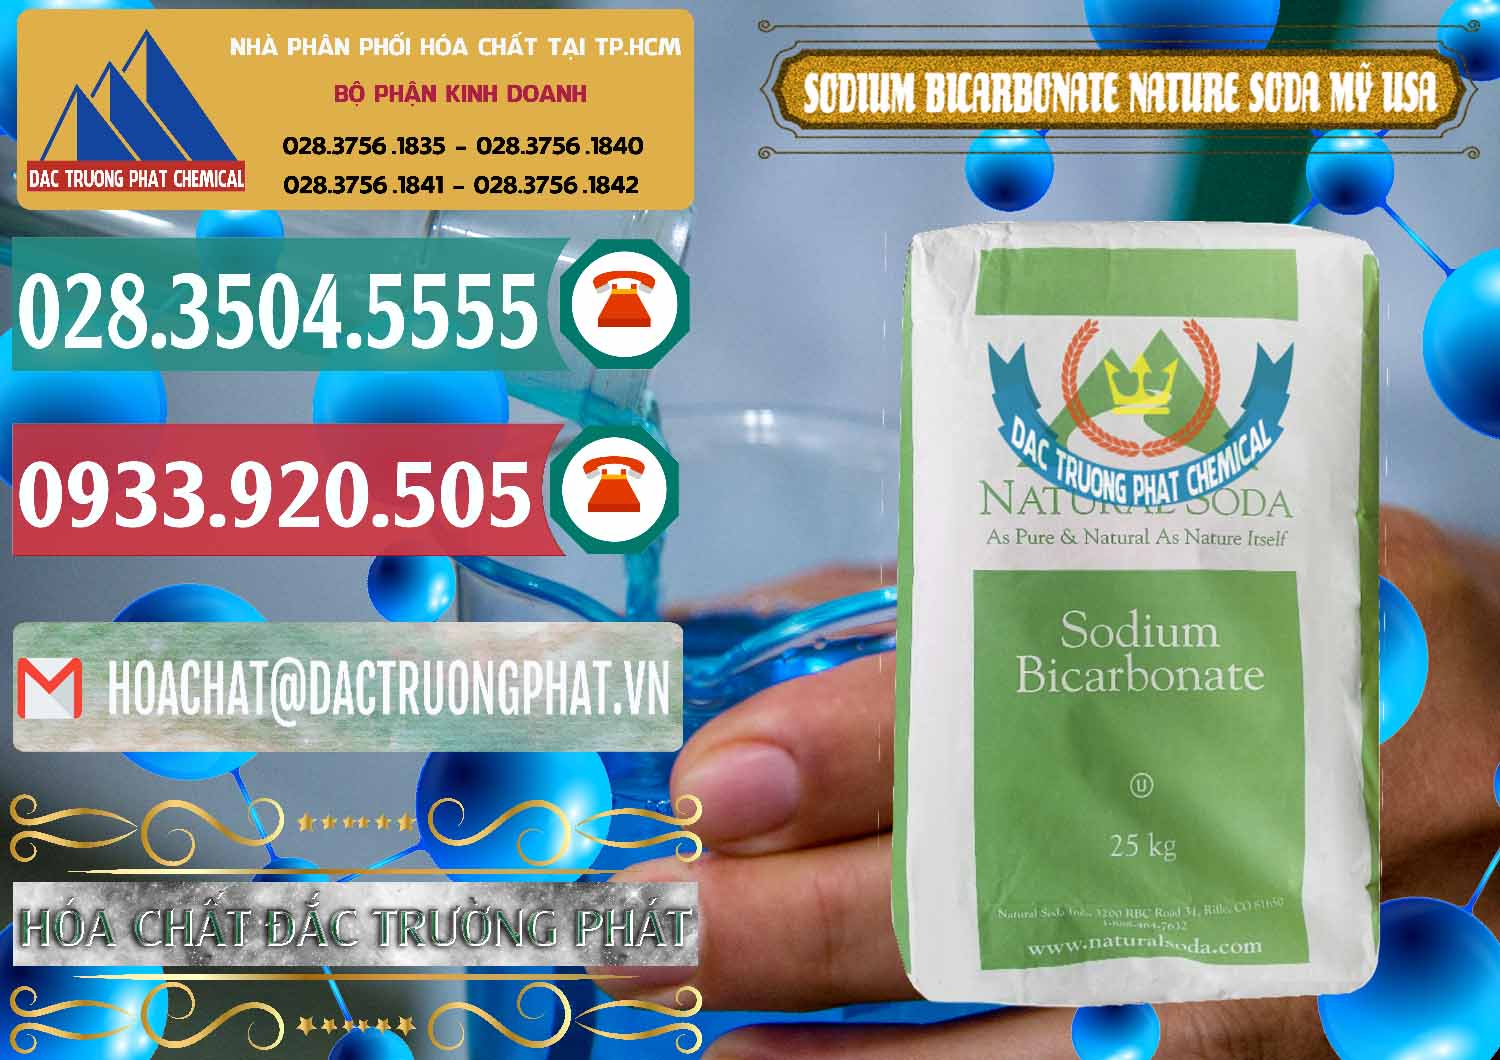 Đơn vị chuyên kinh doanh & bán Sodium Bicarbonate – Bicar NaHCO3 Food Grade Nature Soda Mỹ USA - 0256 - Nơi chuyên cung cấp & nhập khẩu hóa chất tại TP.HCM - muabanhoachat.vn